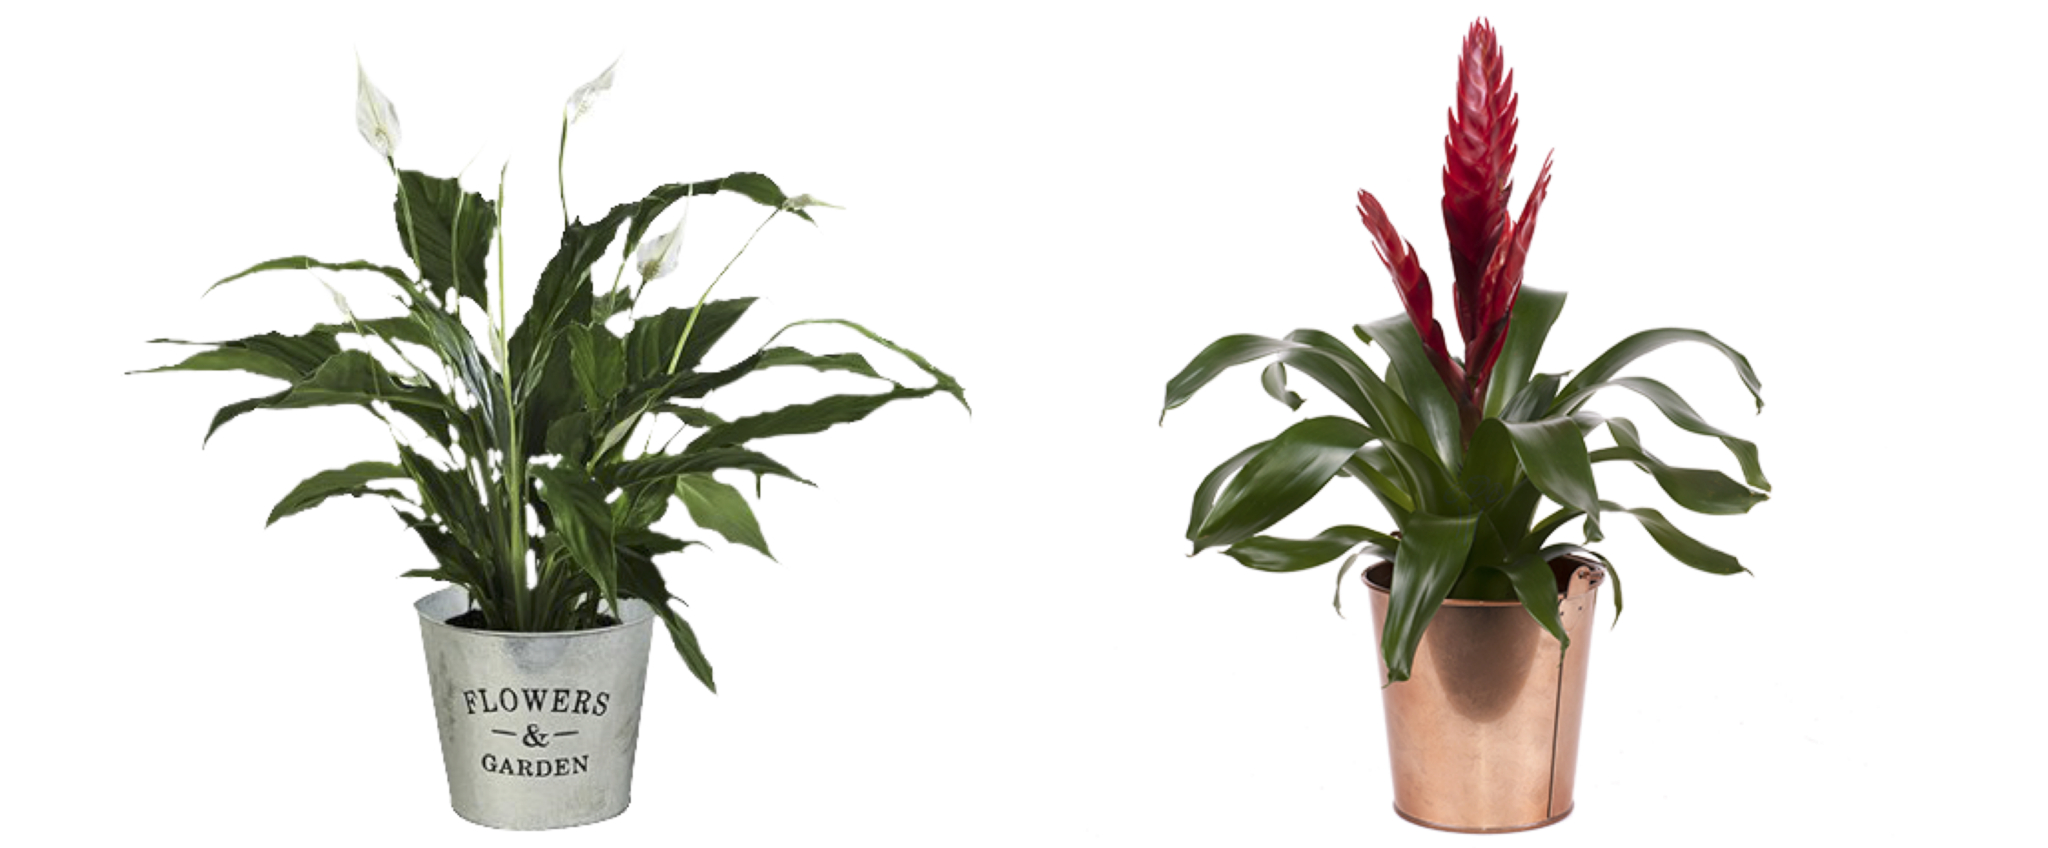 Die zwei Besten Pflanzen fürs Büro: Friedenslilie – Weißes Anthurium und Bromelien – die Exotische